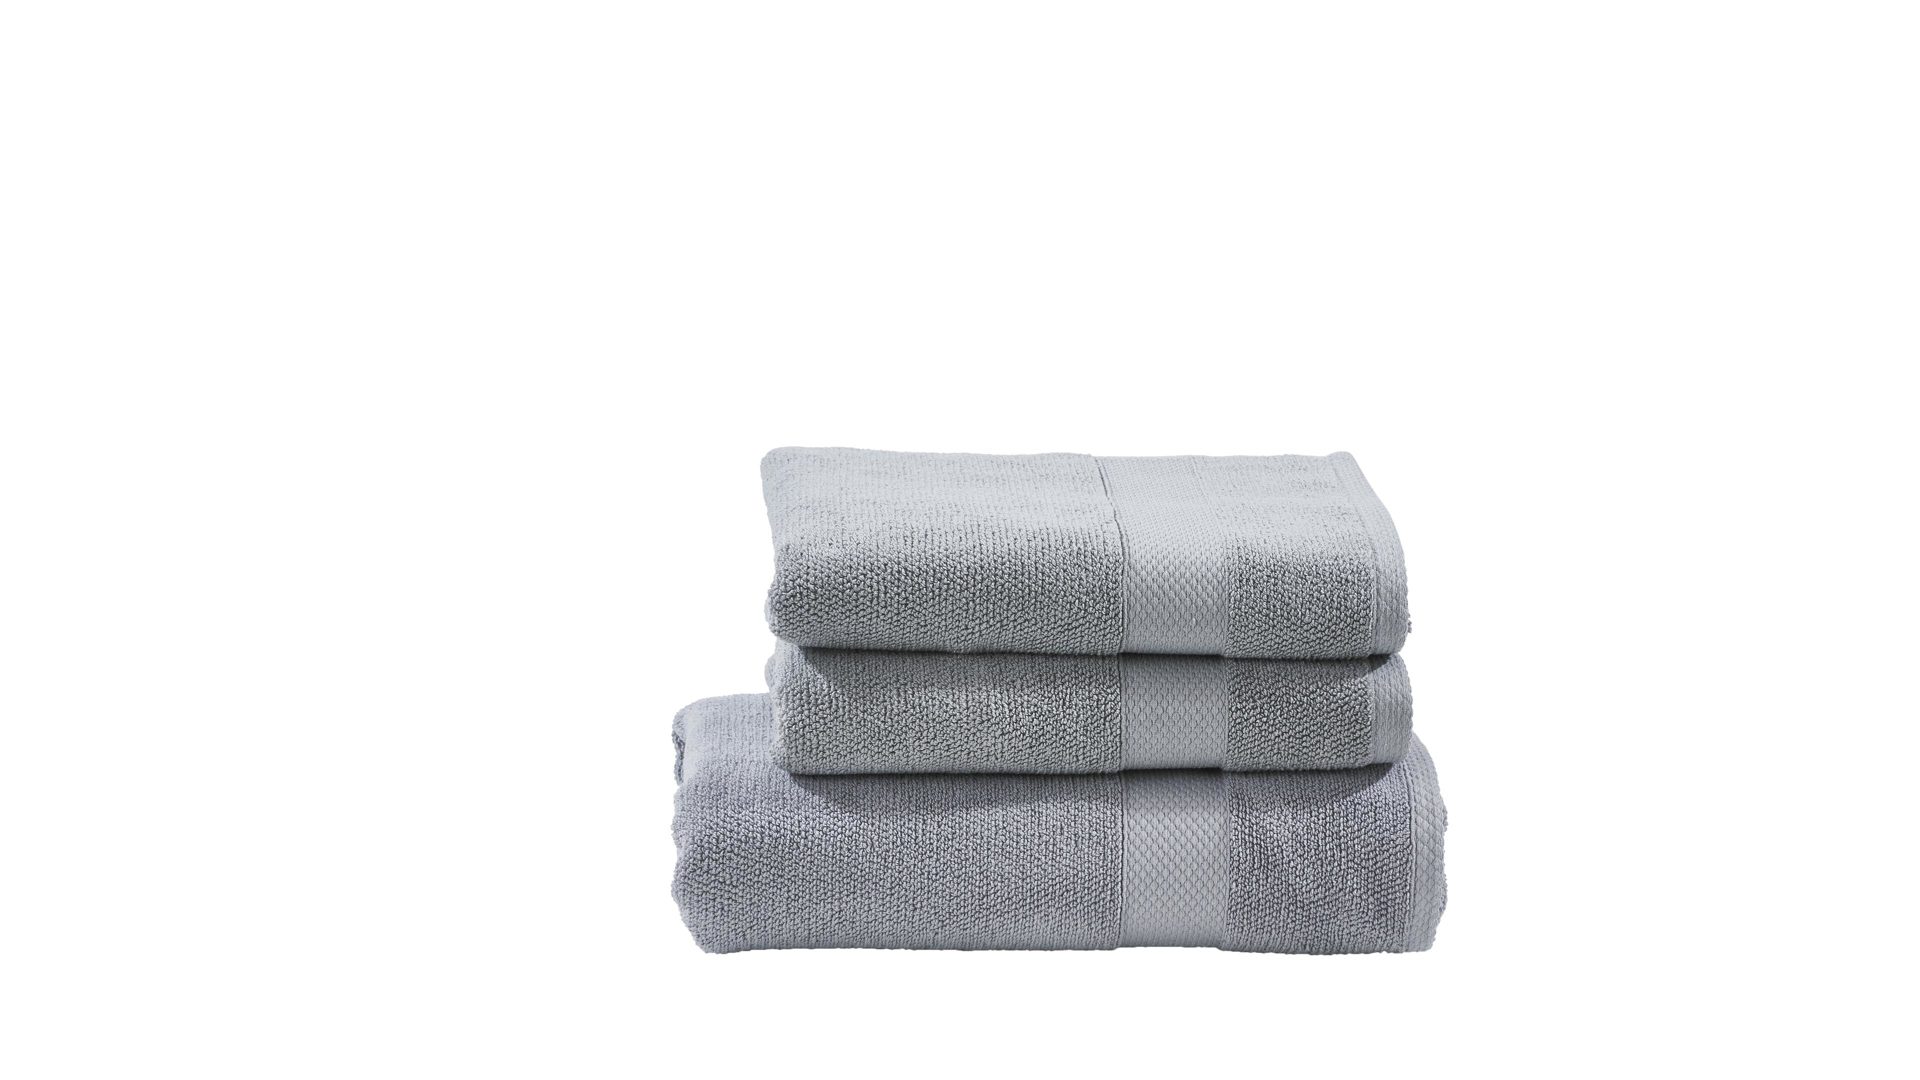 Handtuch-Set Done.® be different aus Stoff in Hellgrau DONE.® Handtuch-Set Deluxe silberfarbene Baumwolle  – dreiteilig